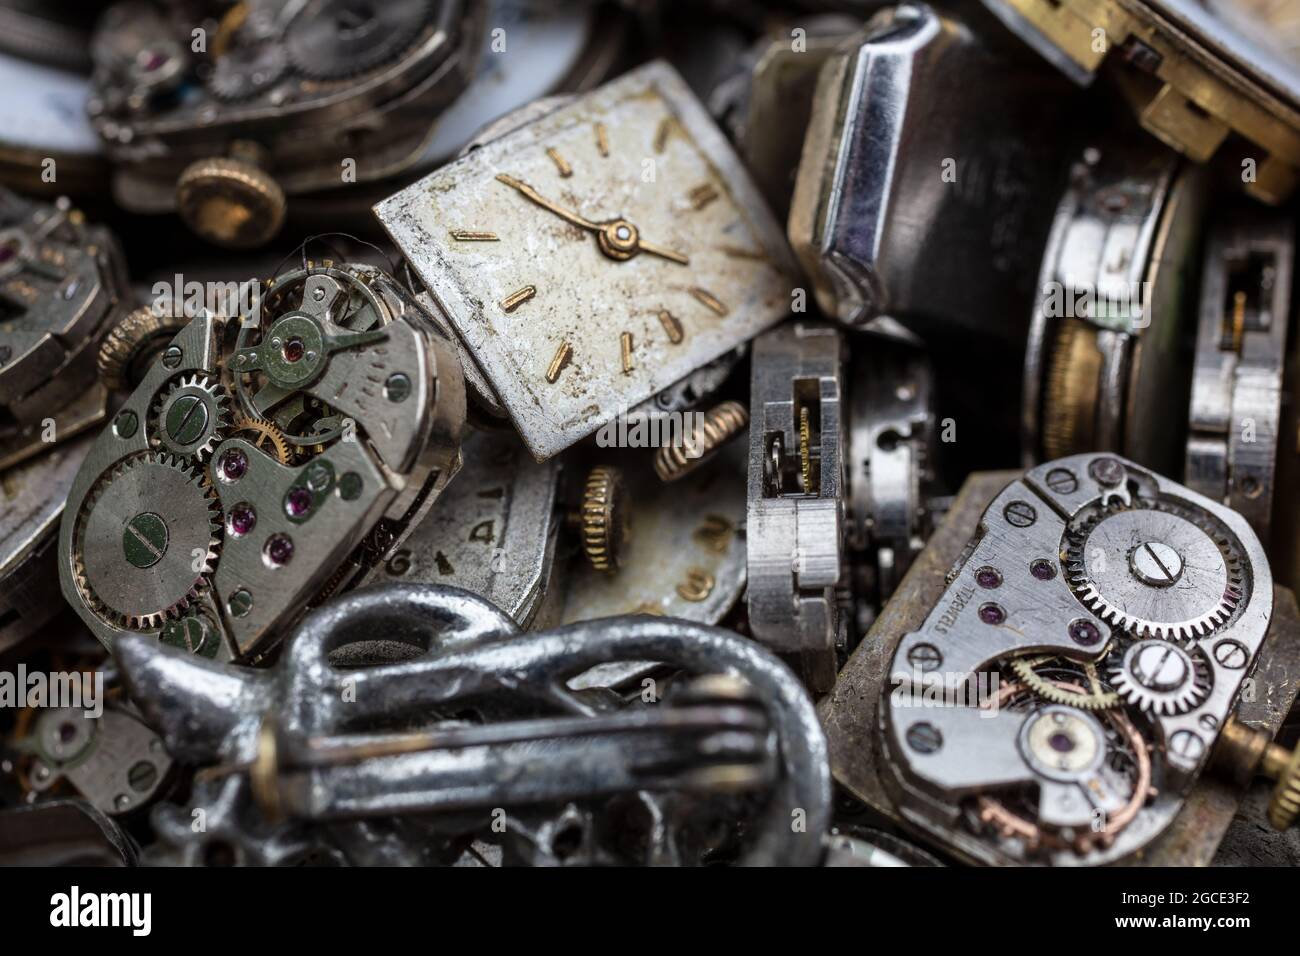 Makro-Nahaufnahme von antiken gebrochenen Vintage-Uhren, Armbanduhren oder Armbanduhrwerken und Teilen zur Reparatur. Zeitkonzept-Fotografie. Stockfoto